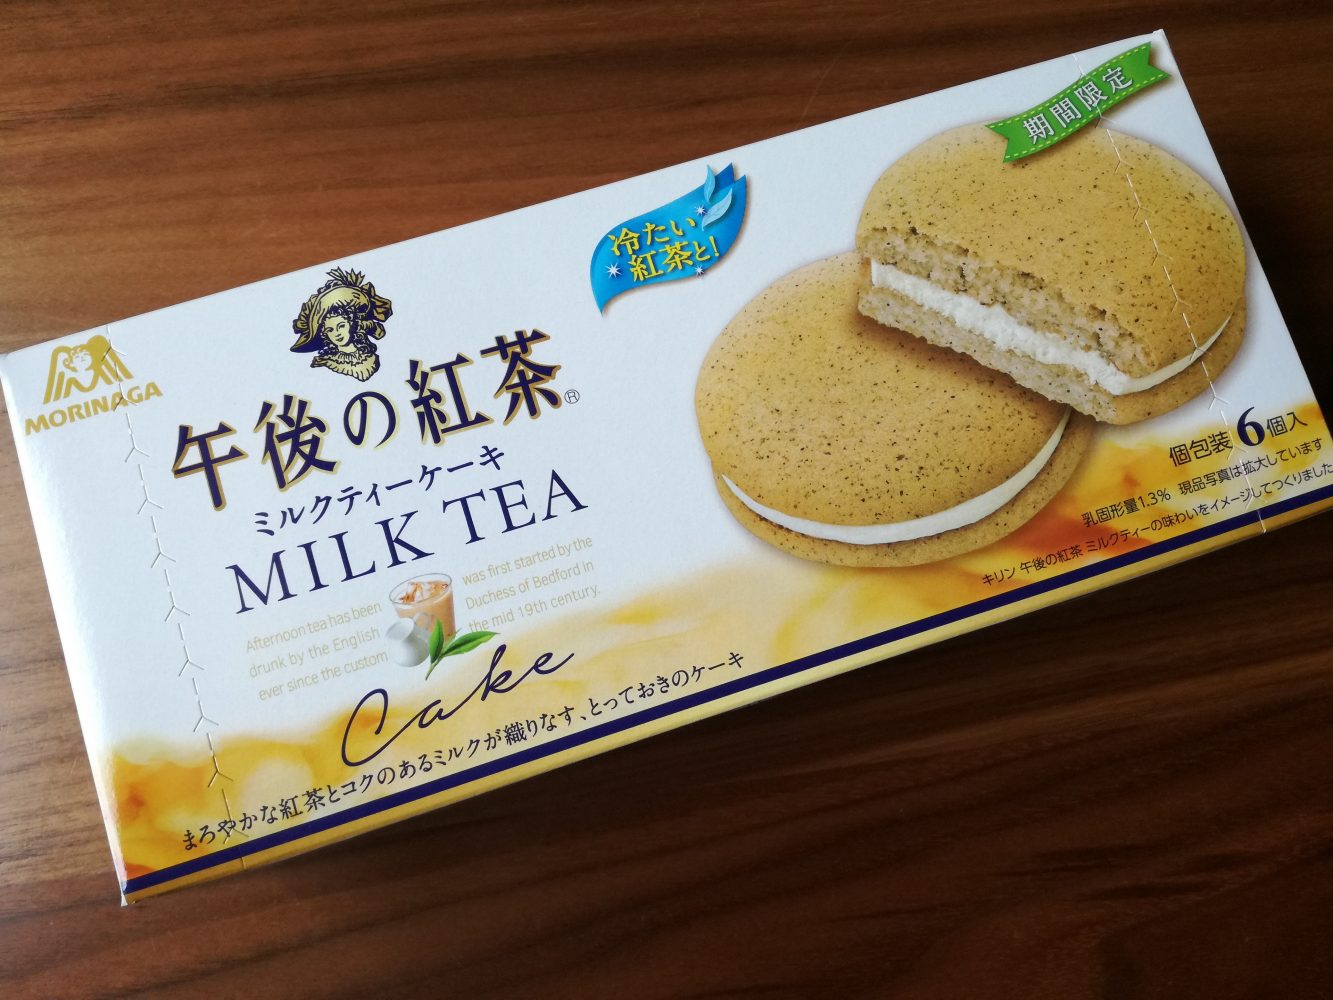 冷たい紅茶と楽しみたい 森永製菓 午後の紅茶 ミルクティーケーキ レシーポ